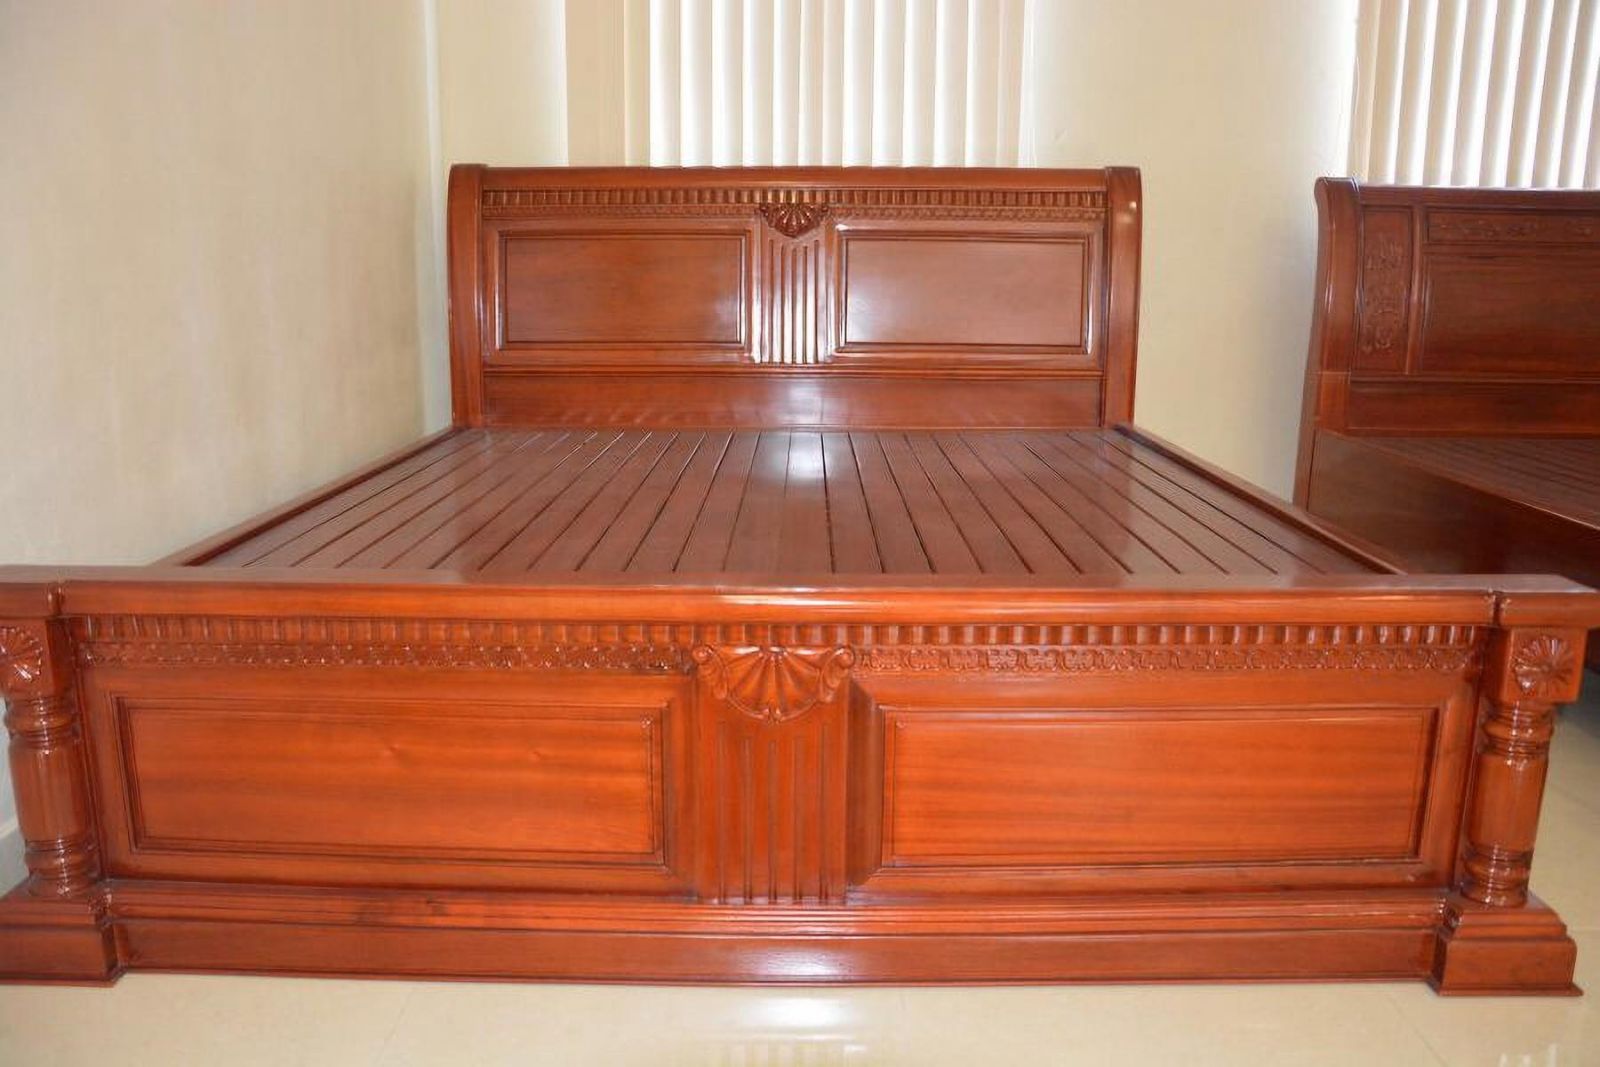 Với chất liệu vững chắc và màu sắc tinh tế, giường gỗ sồi sẽ mang đến cho bạn không gian nghỉ ngơi thoải mái nhất. Hãy xem hình ảnh giường gỗ sồi để khám phá sự hiện đại và tiện nghi của sản phẩm này.